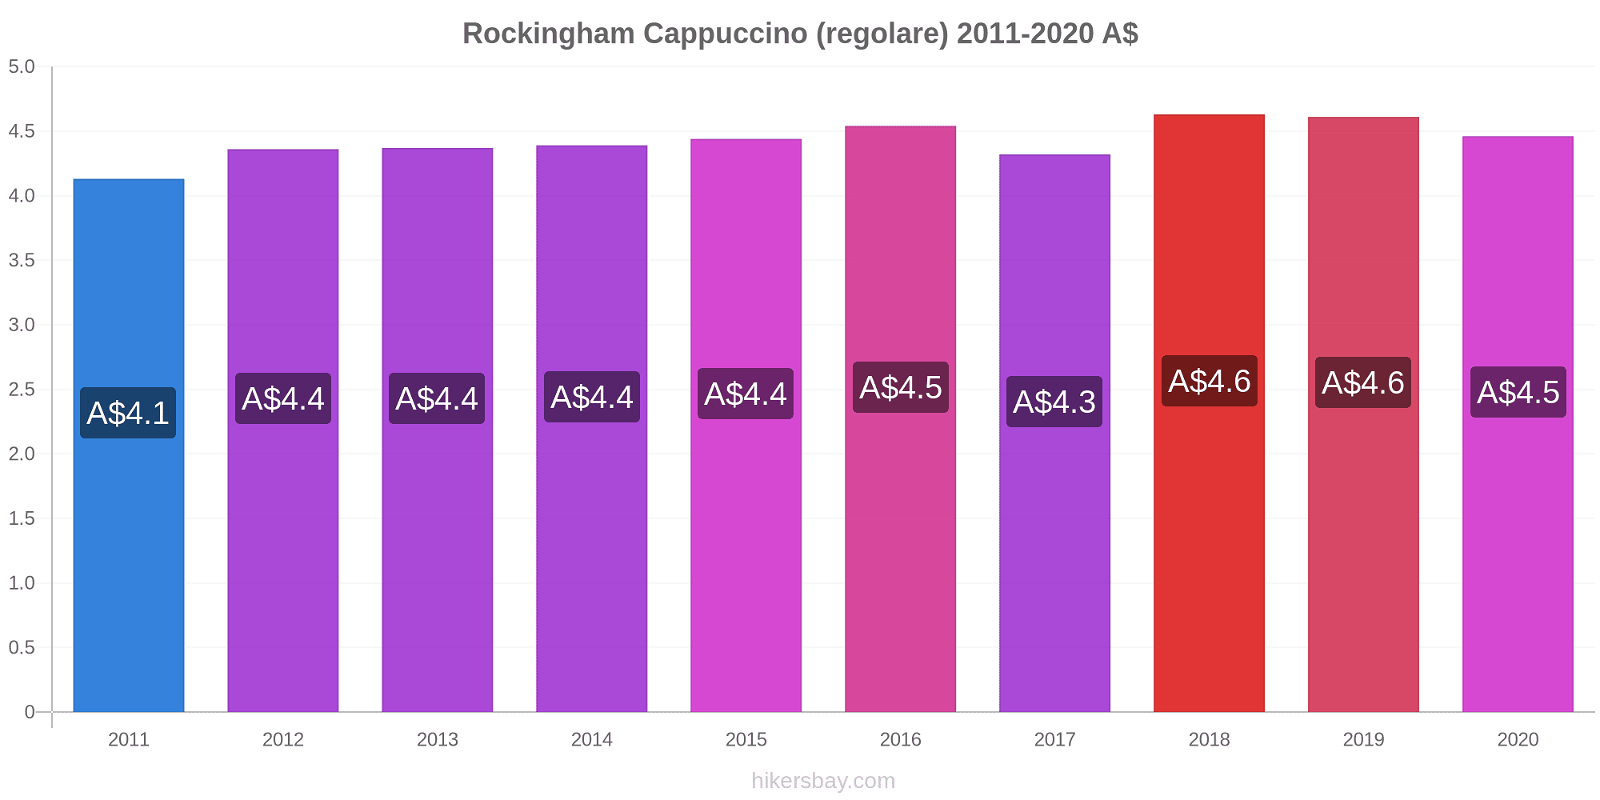 Rockingham variazioni di prezzo Cappuccino (normale) hikersbay.com